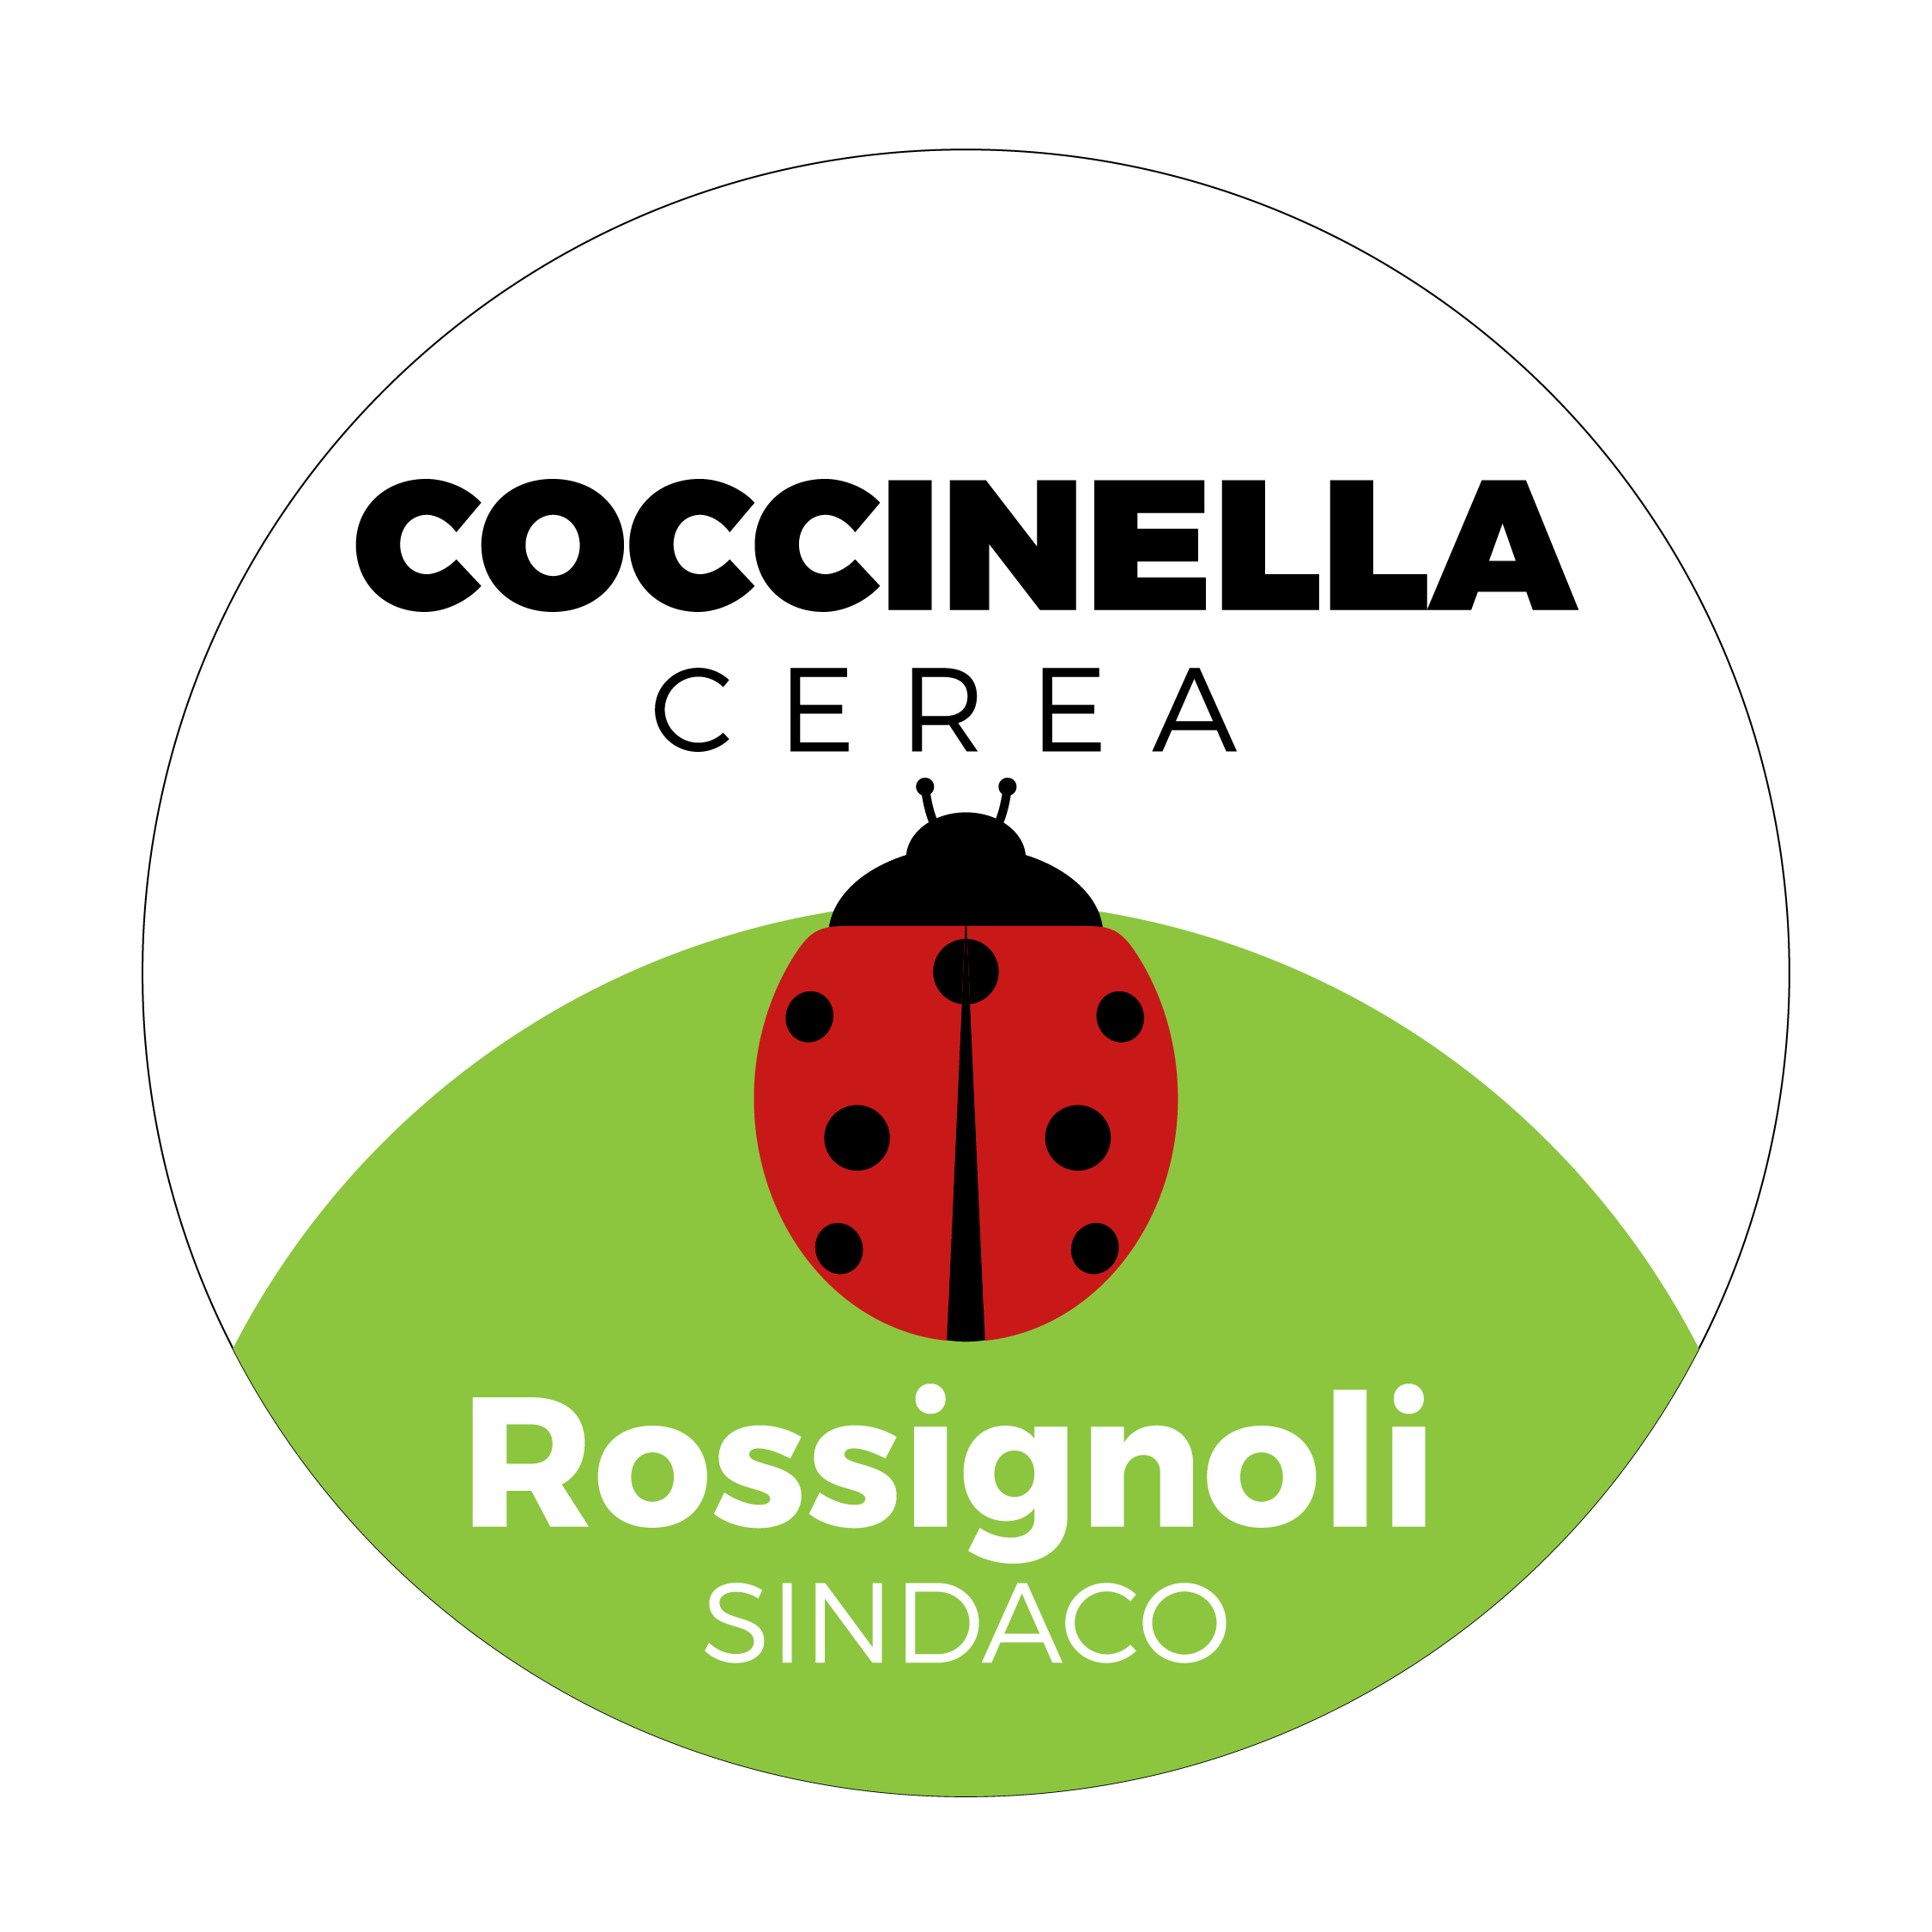 Coccinella Cerea